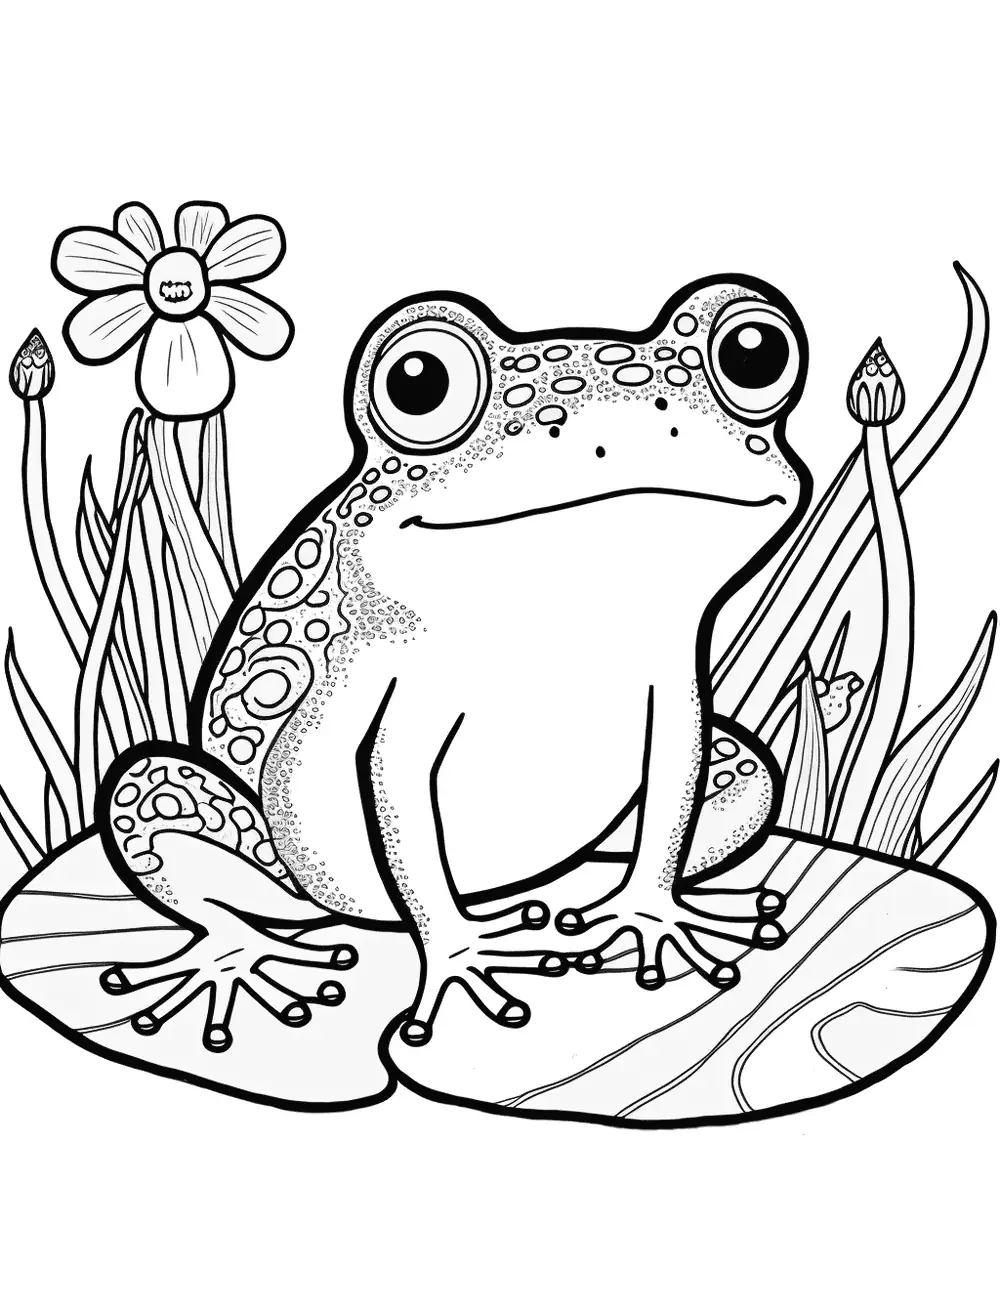 Dibujos para Colorear Frog And Caterpillar